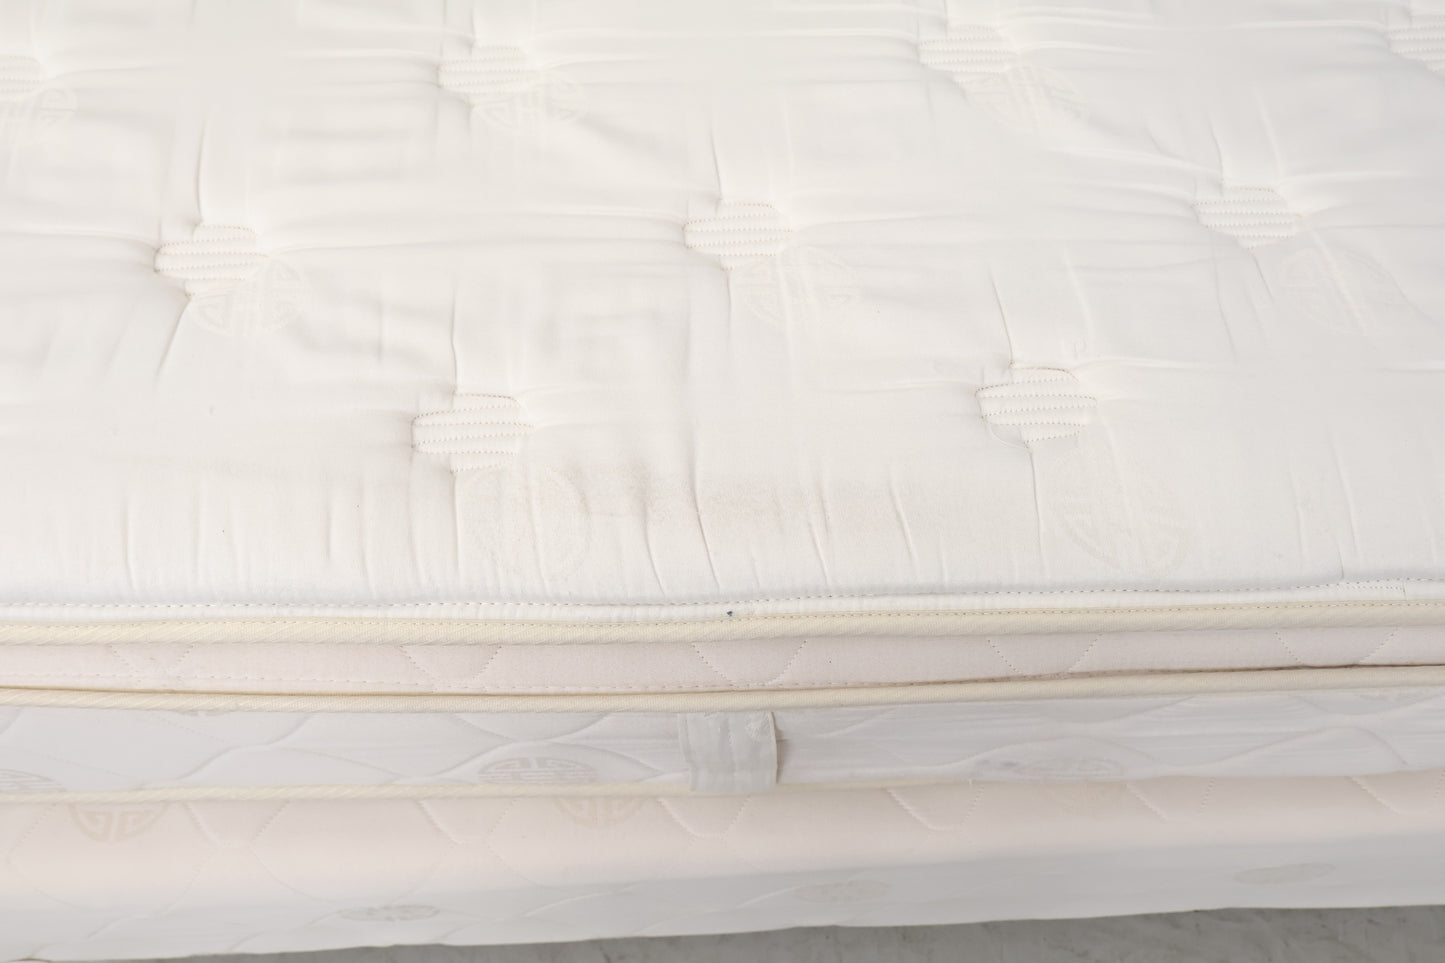 Nyrenset | Hvit og brun 200x190 seng